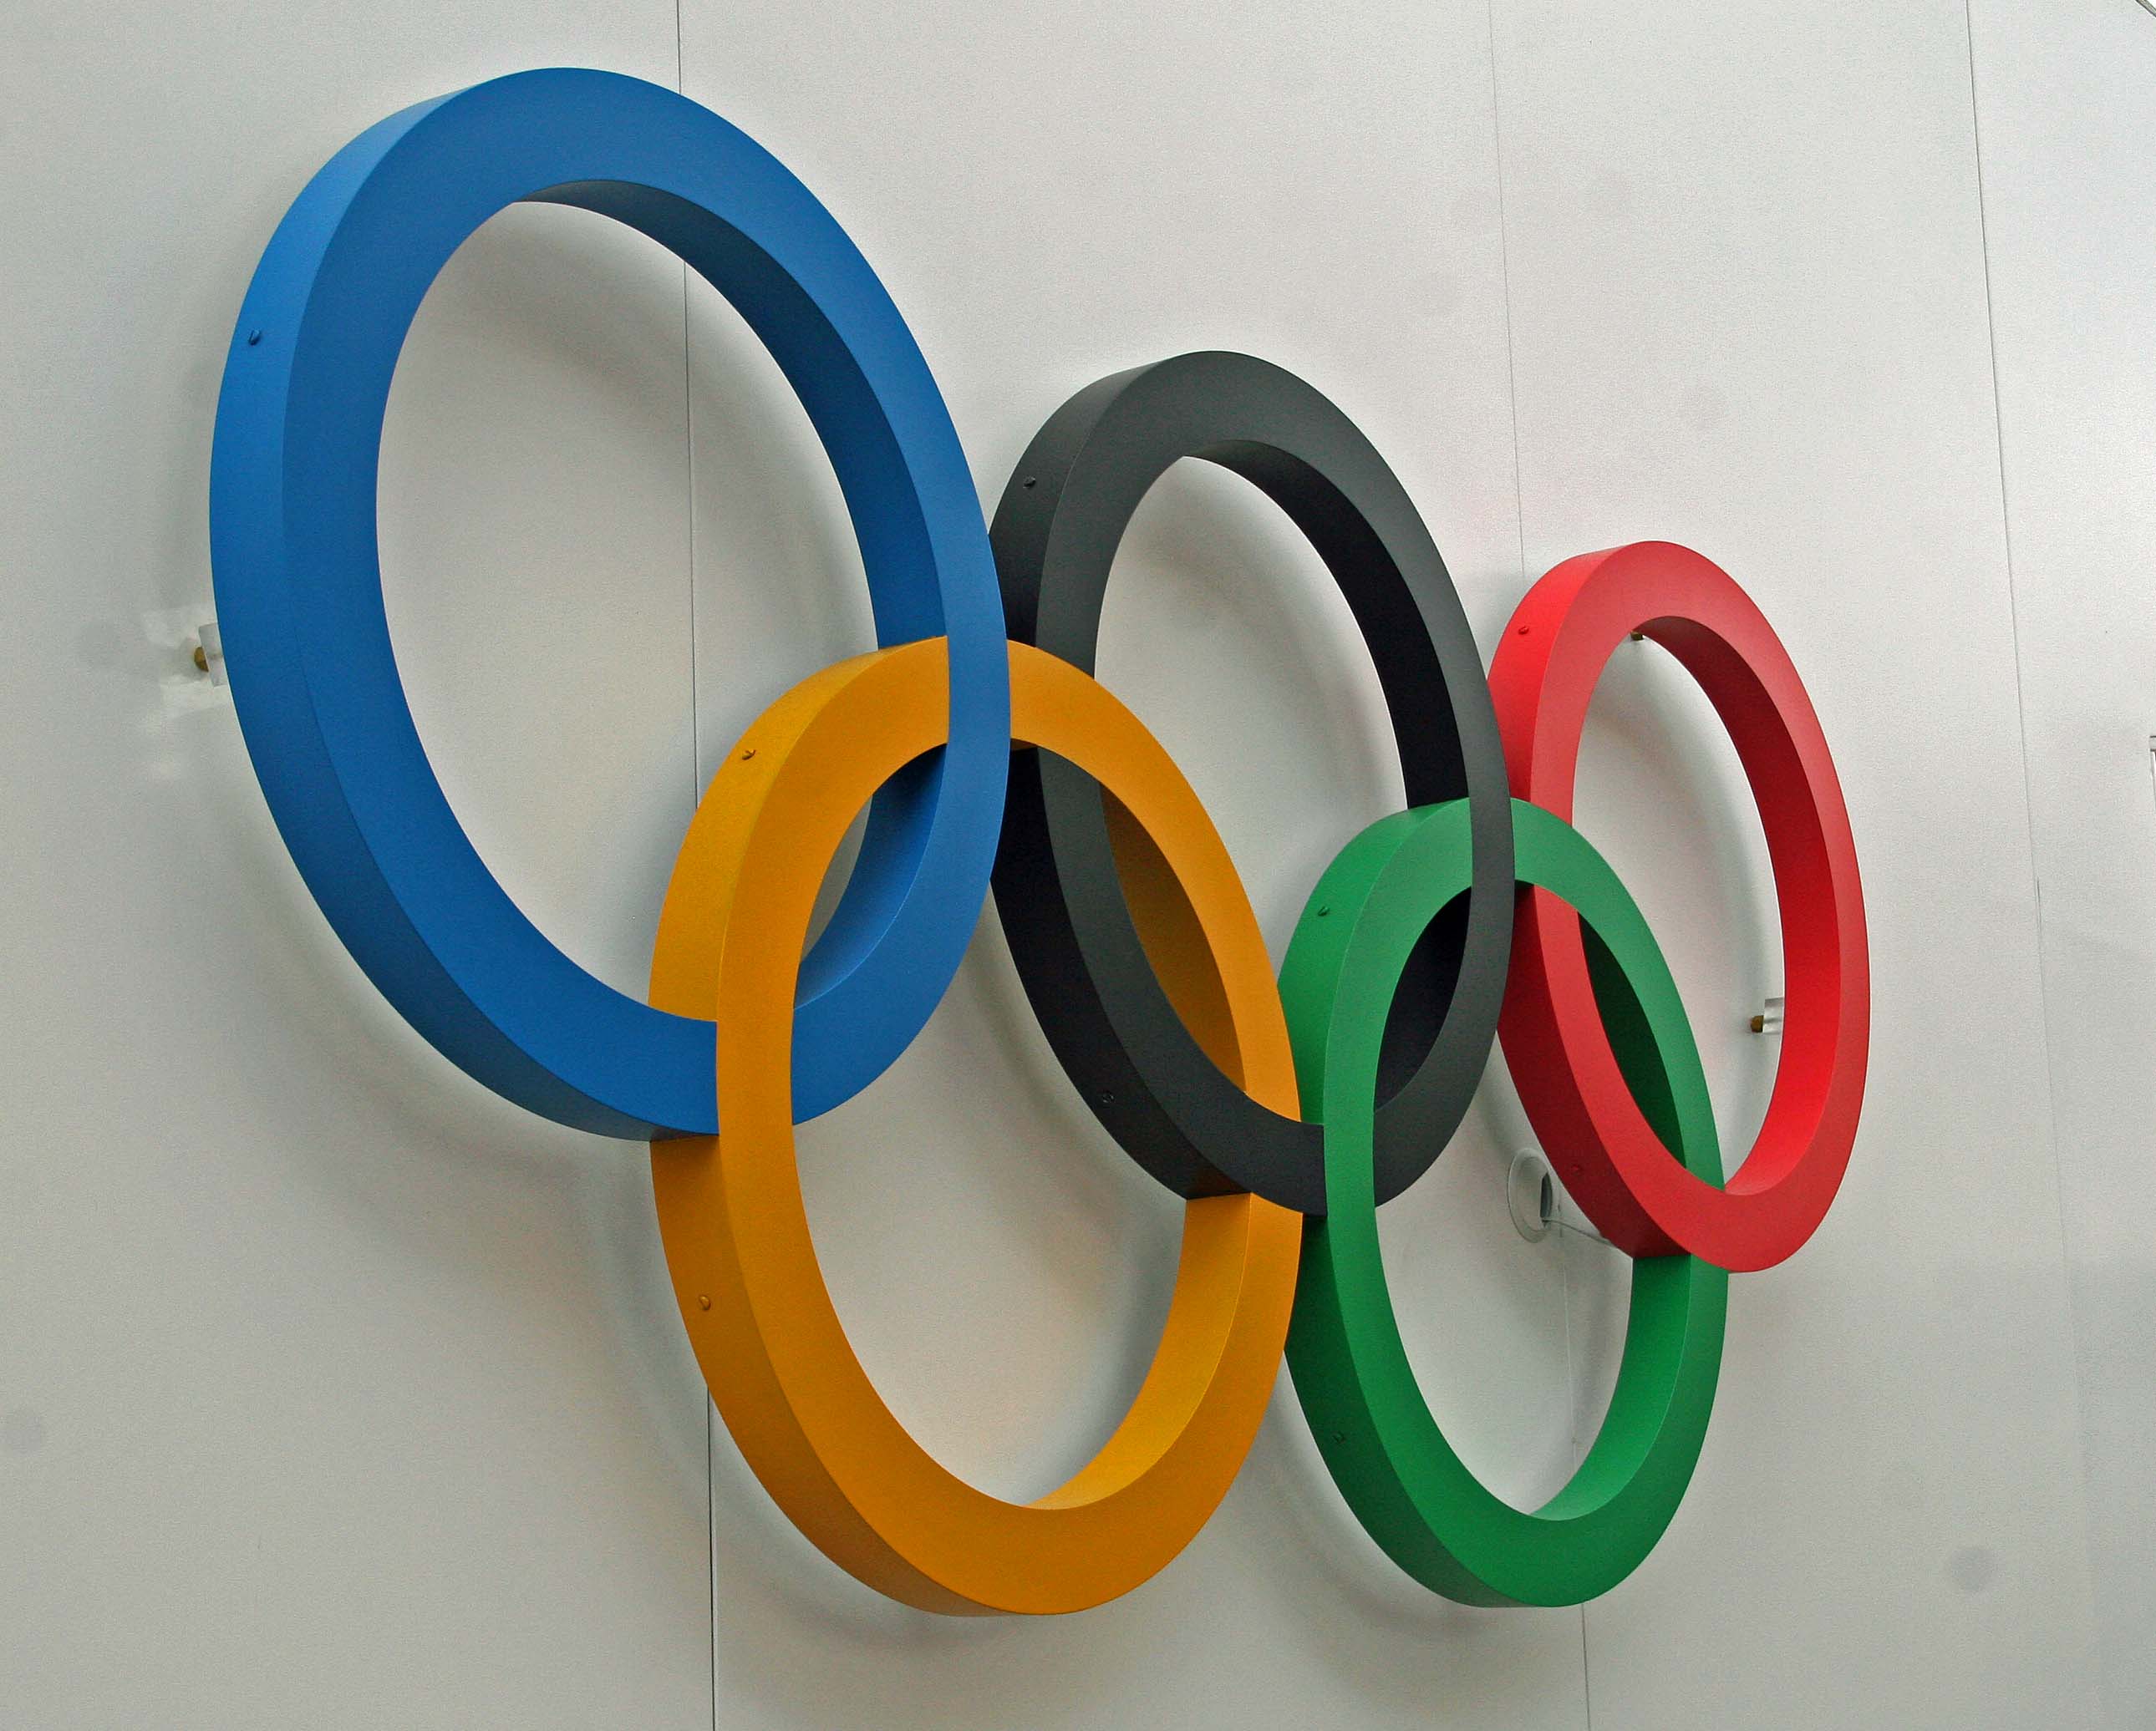 Kesäolympialaisten mitaleista kilpailtiin viimeksi Lontoossa 2012. Kuva: Lassi Palo